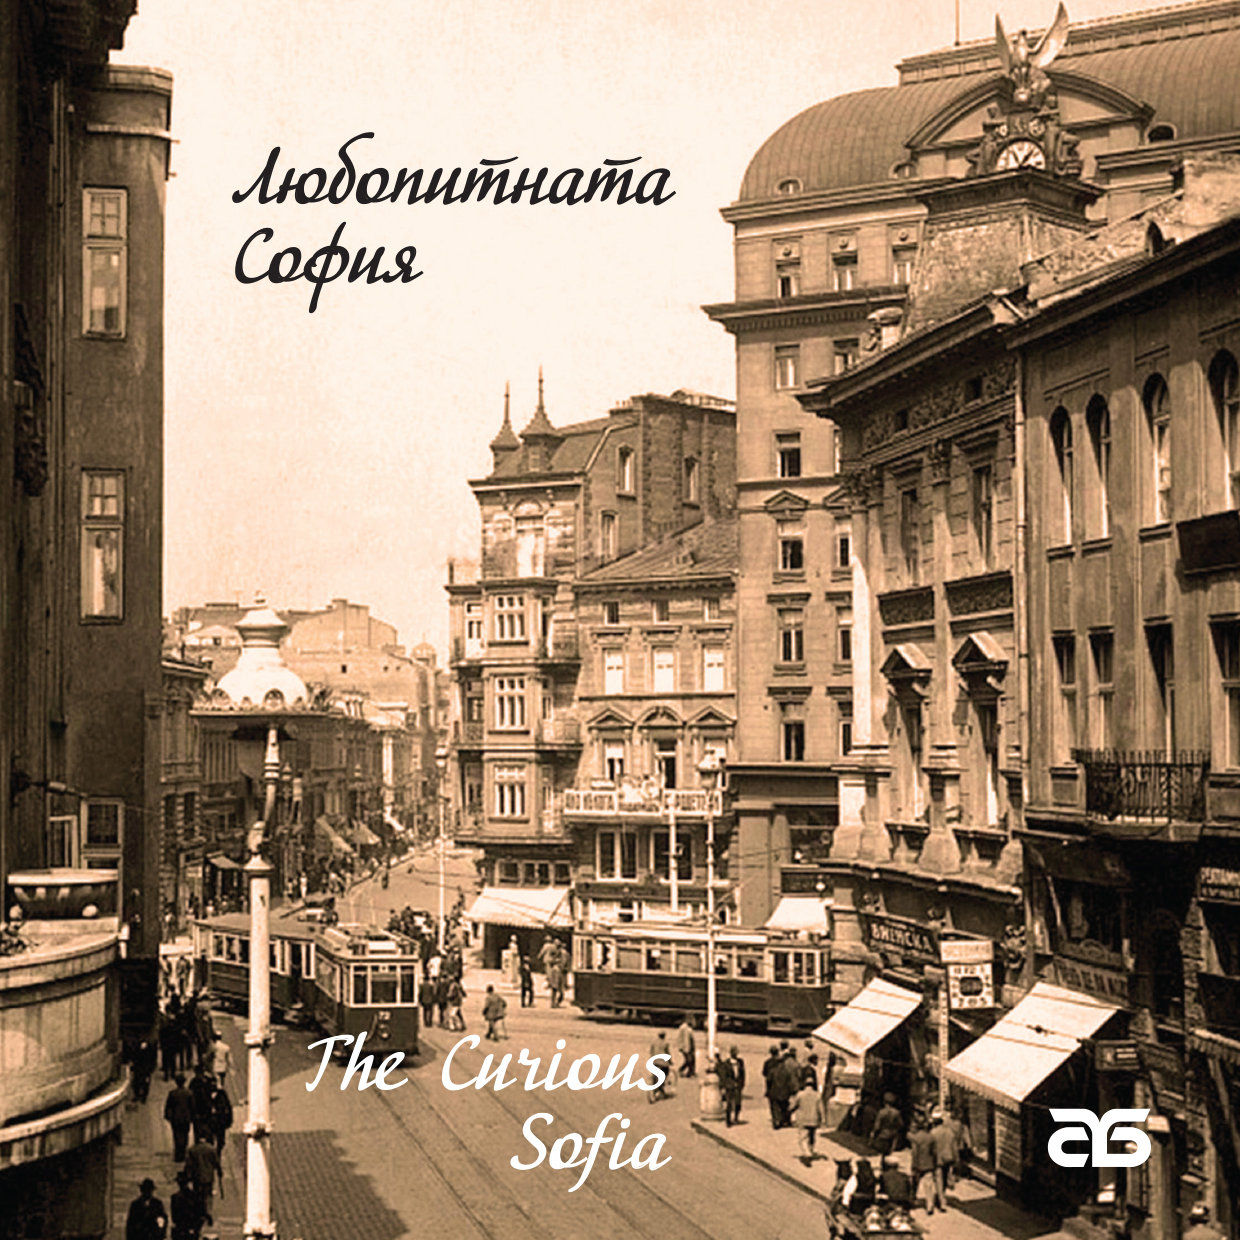 Новото издание „Любопитната София“ от тематичната поредица  на Столична библиотека за историята на столицата